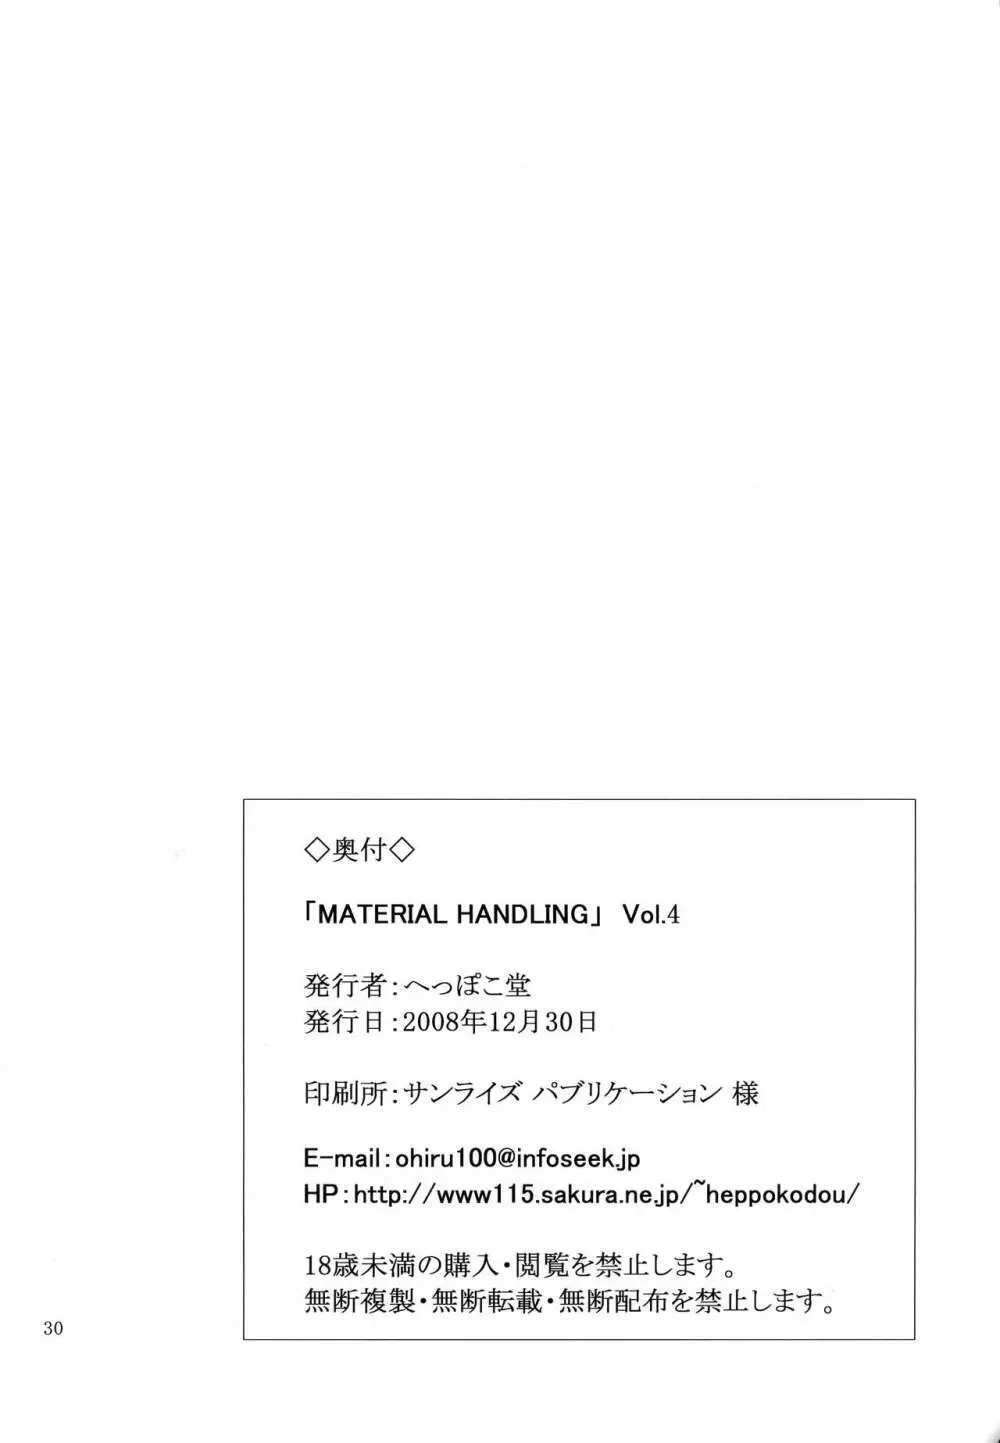 Material Handling Vol.4 30ページ